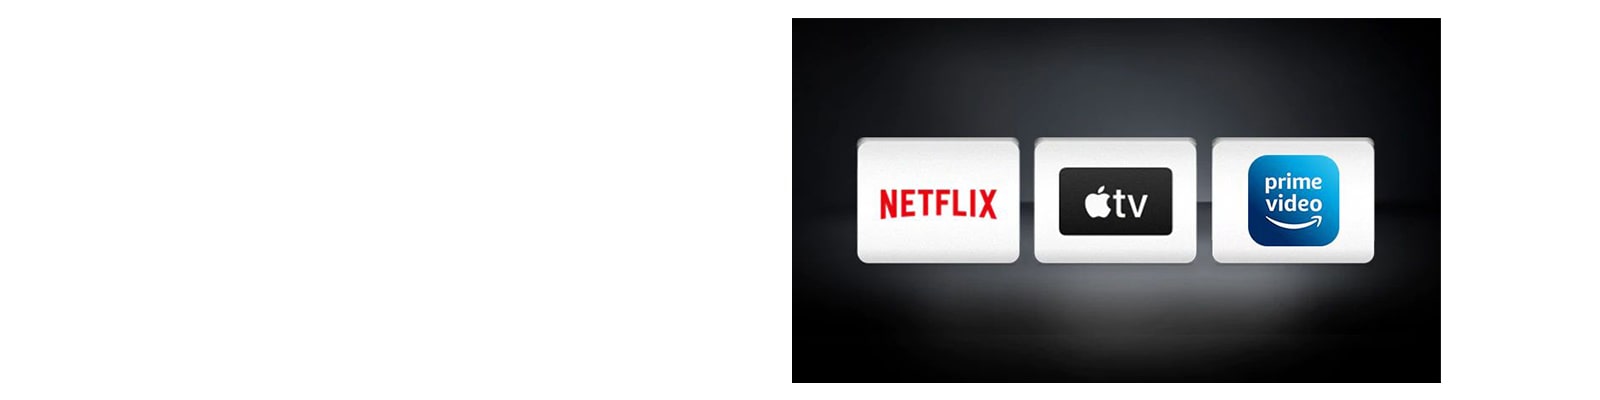 Логотип Netflix, логотип Apple TV, основне відео Amazon розташовані горизонтально на чорному тлі.